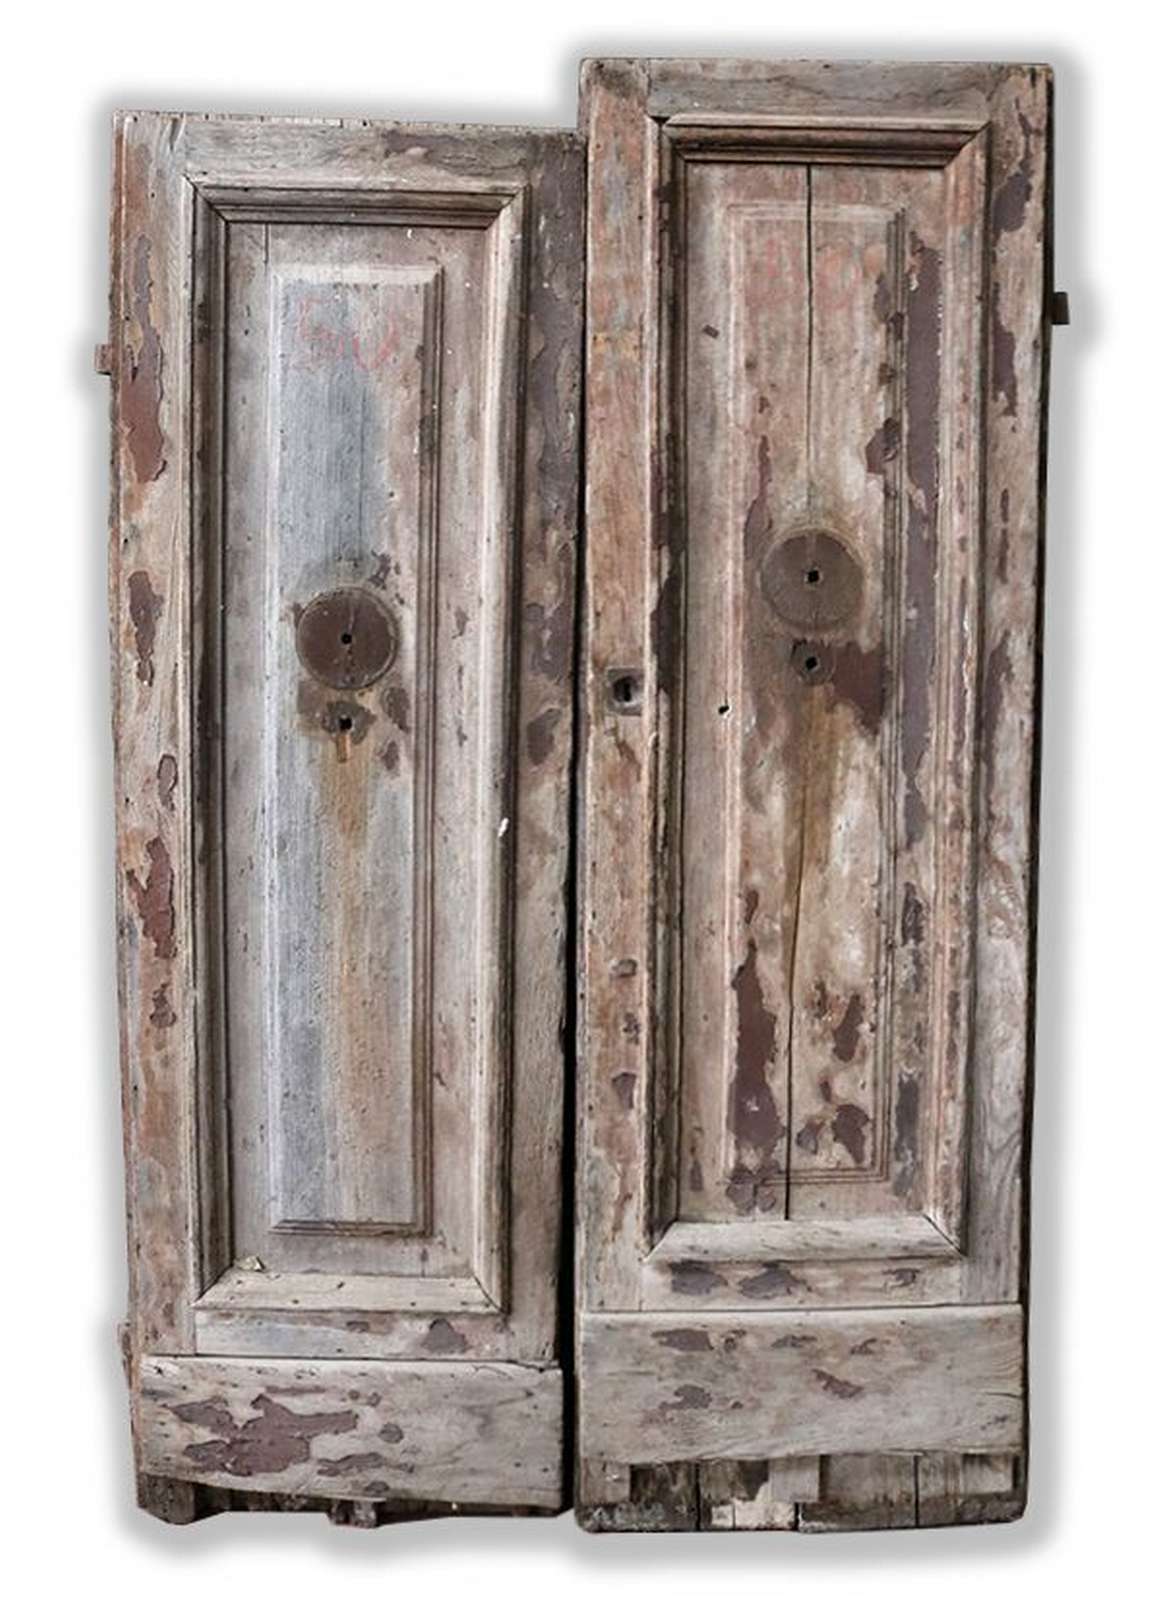 Antico portoncino in legno - Portoni Antichi - Porte Antiche - Prodotti - Antichità Fiorillo